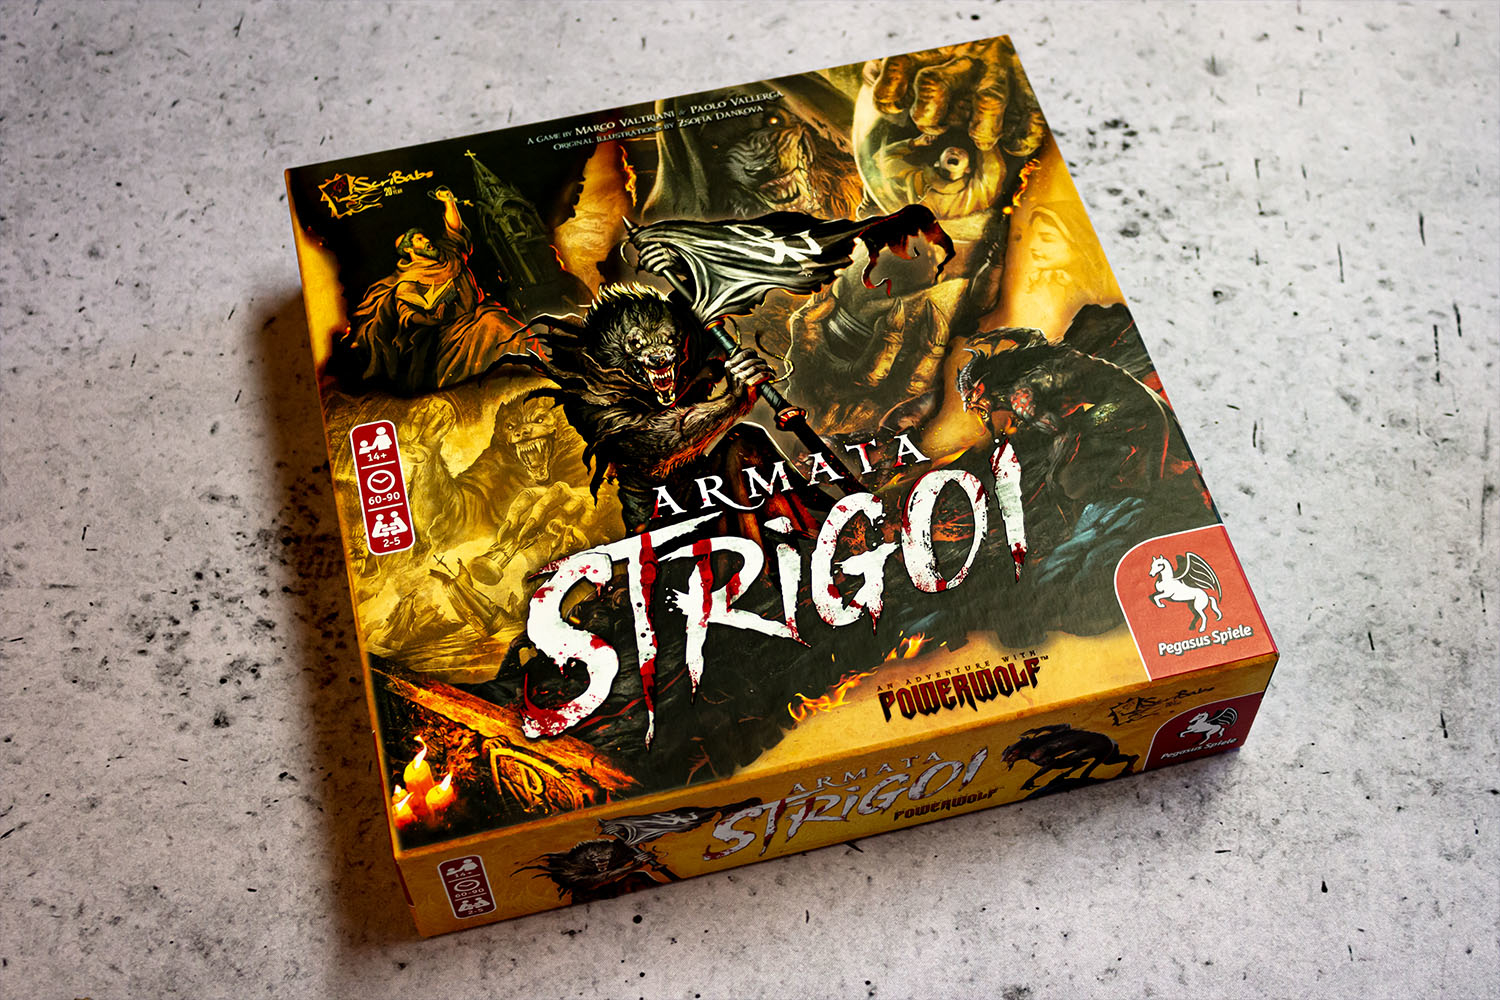 ARMATA STRIGOI // Bilder vom Powerwolf Brettspiel